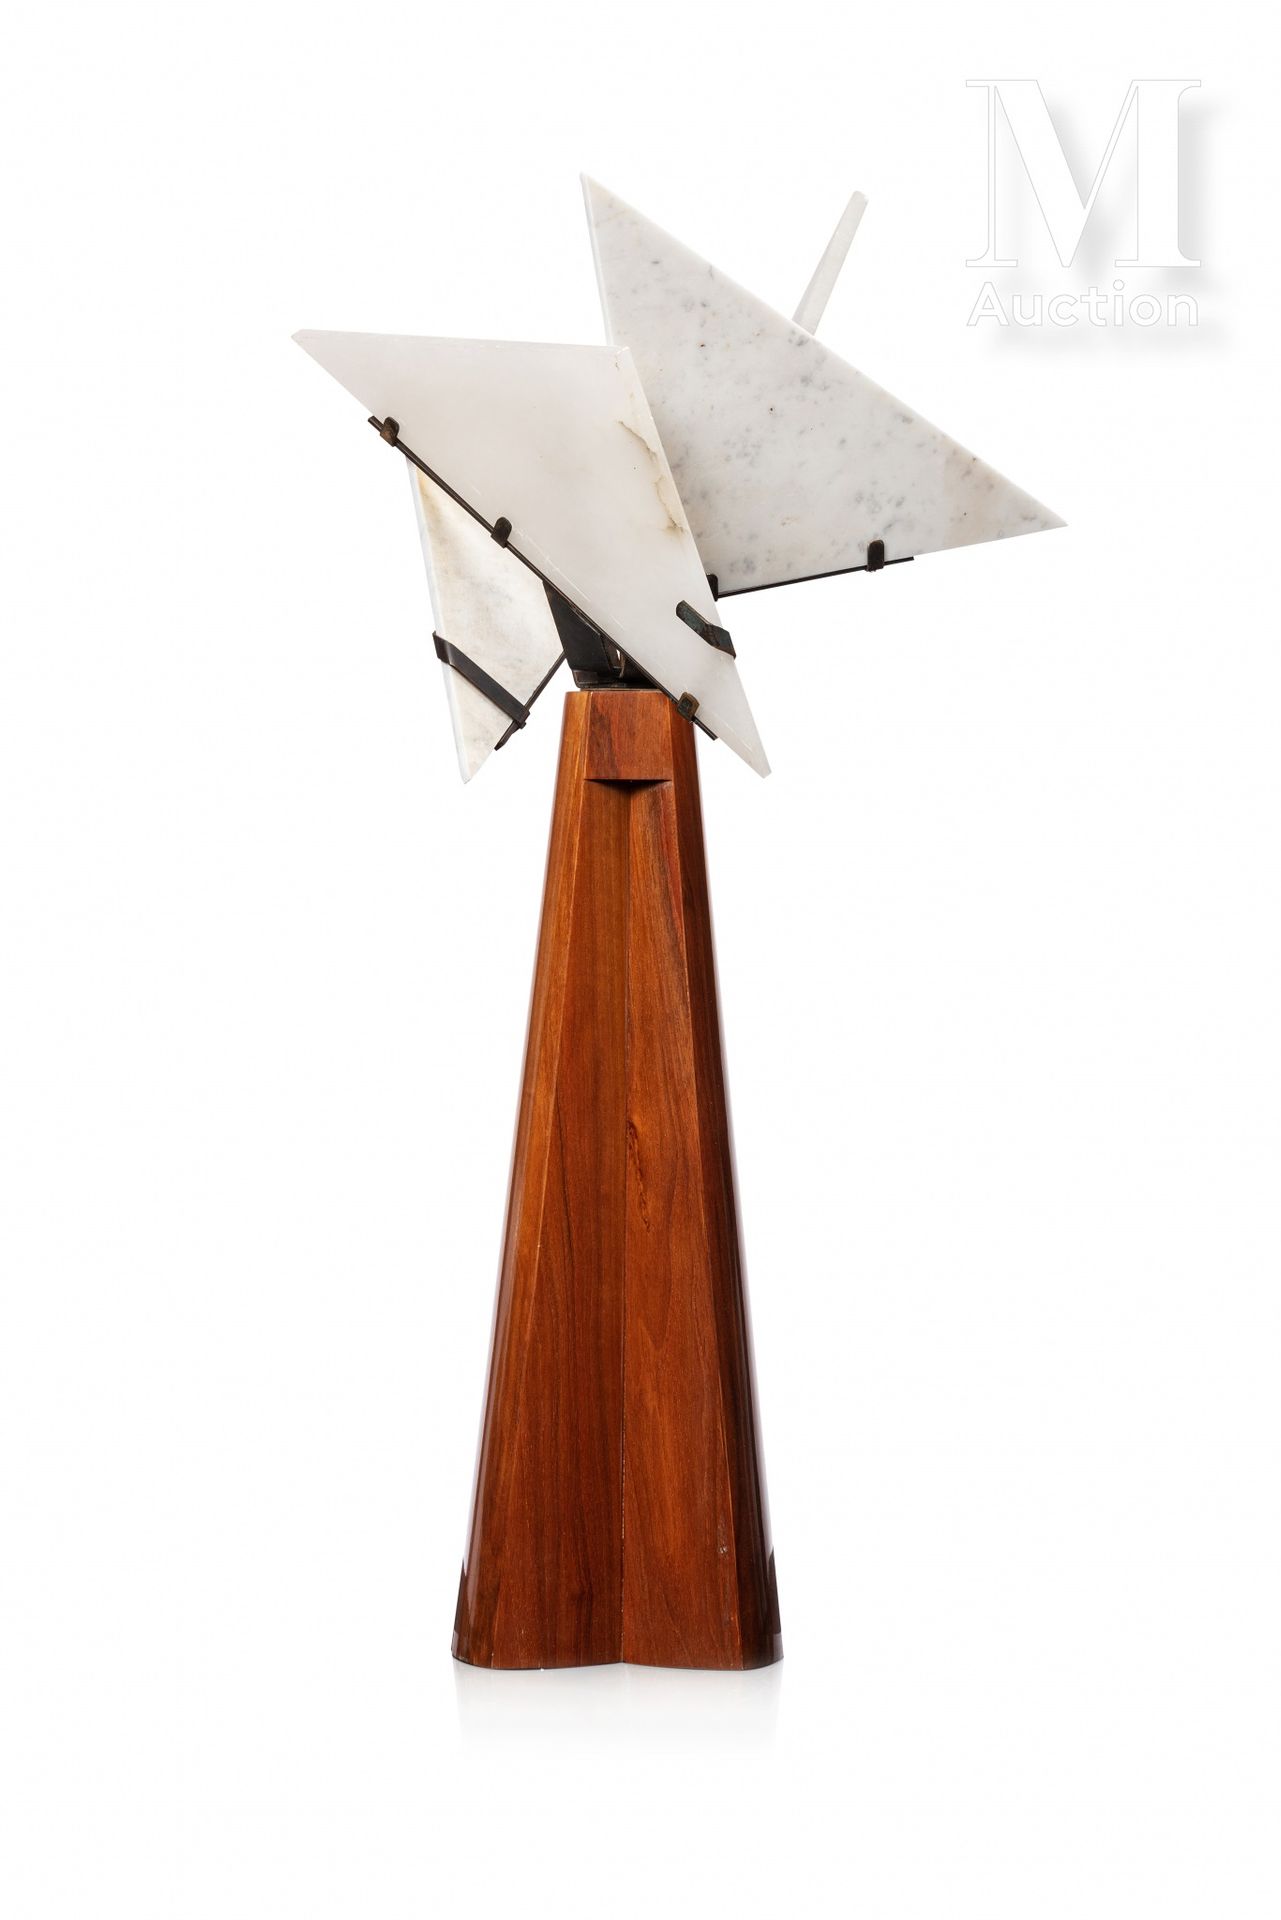 Editions Pierre CHAREAU "宗教信仰"

桃花心木饰面台灯，围着四个三角形的雪花石膏牌，有一个青铜框架。

高：86厘米

(略微缺乏单板&hellip;